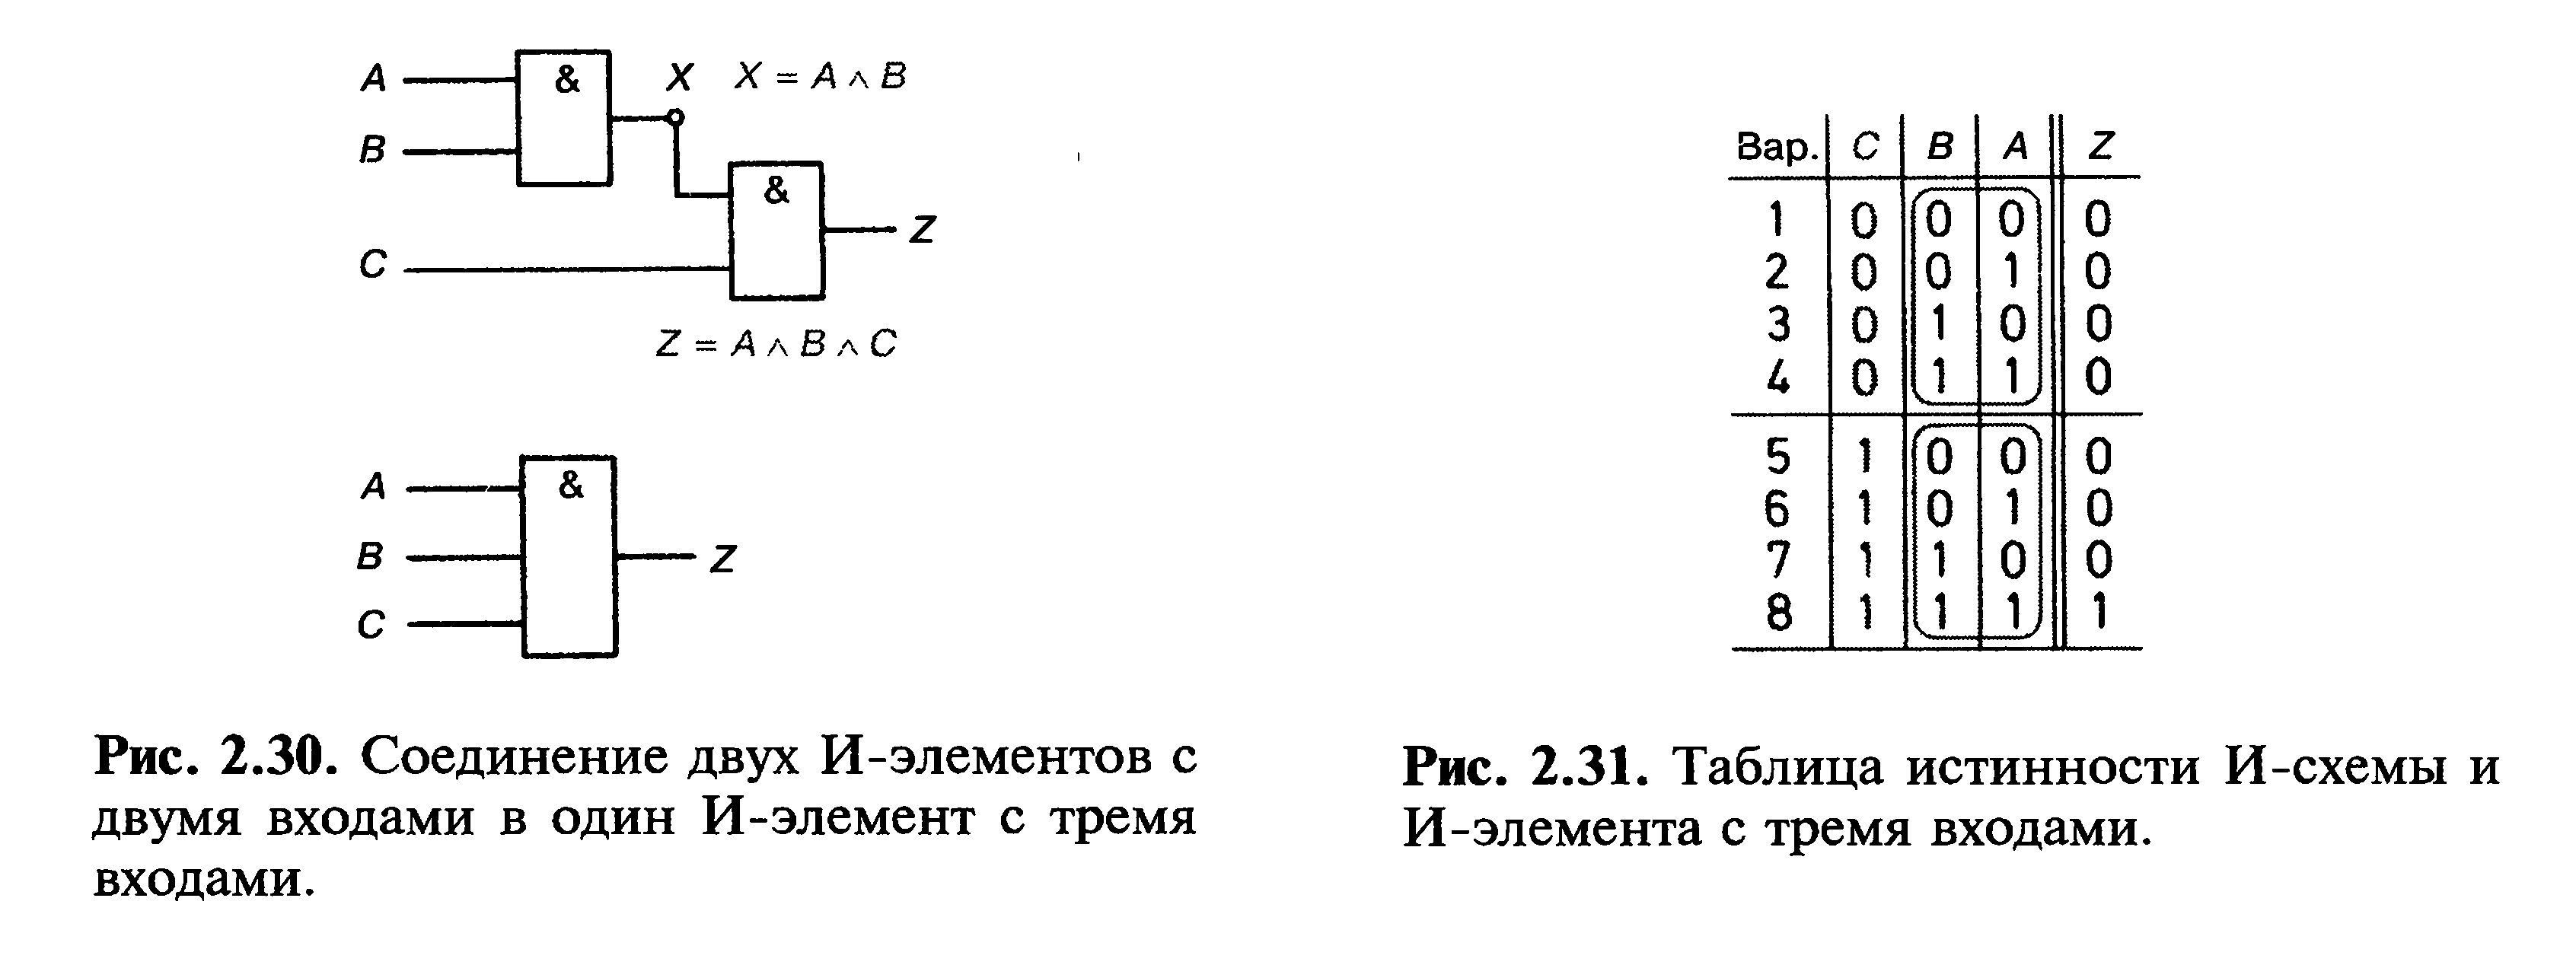 Соединение двух И-элементов с двумя входами в один И-элемент с тремя входами